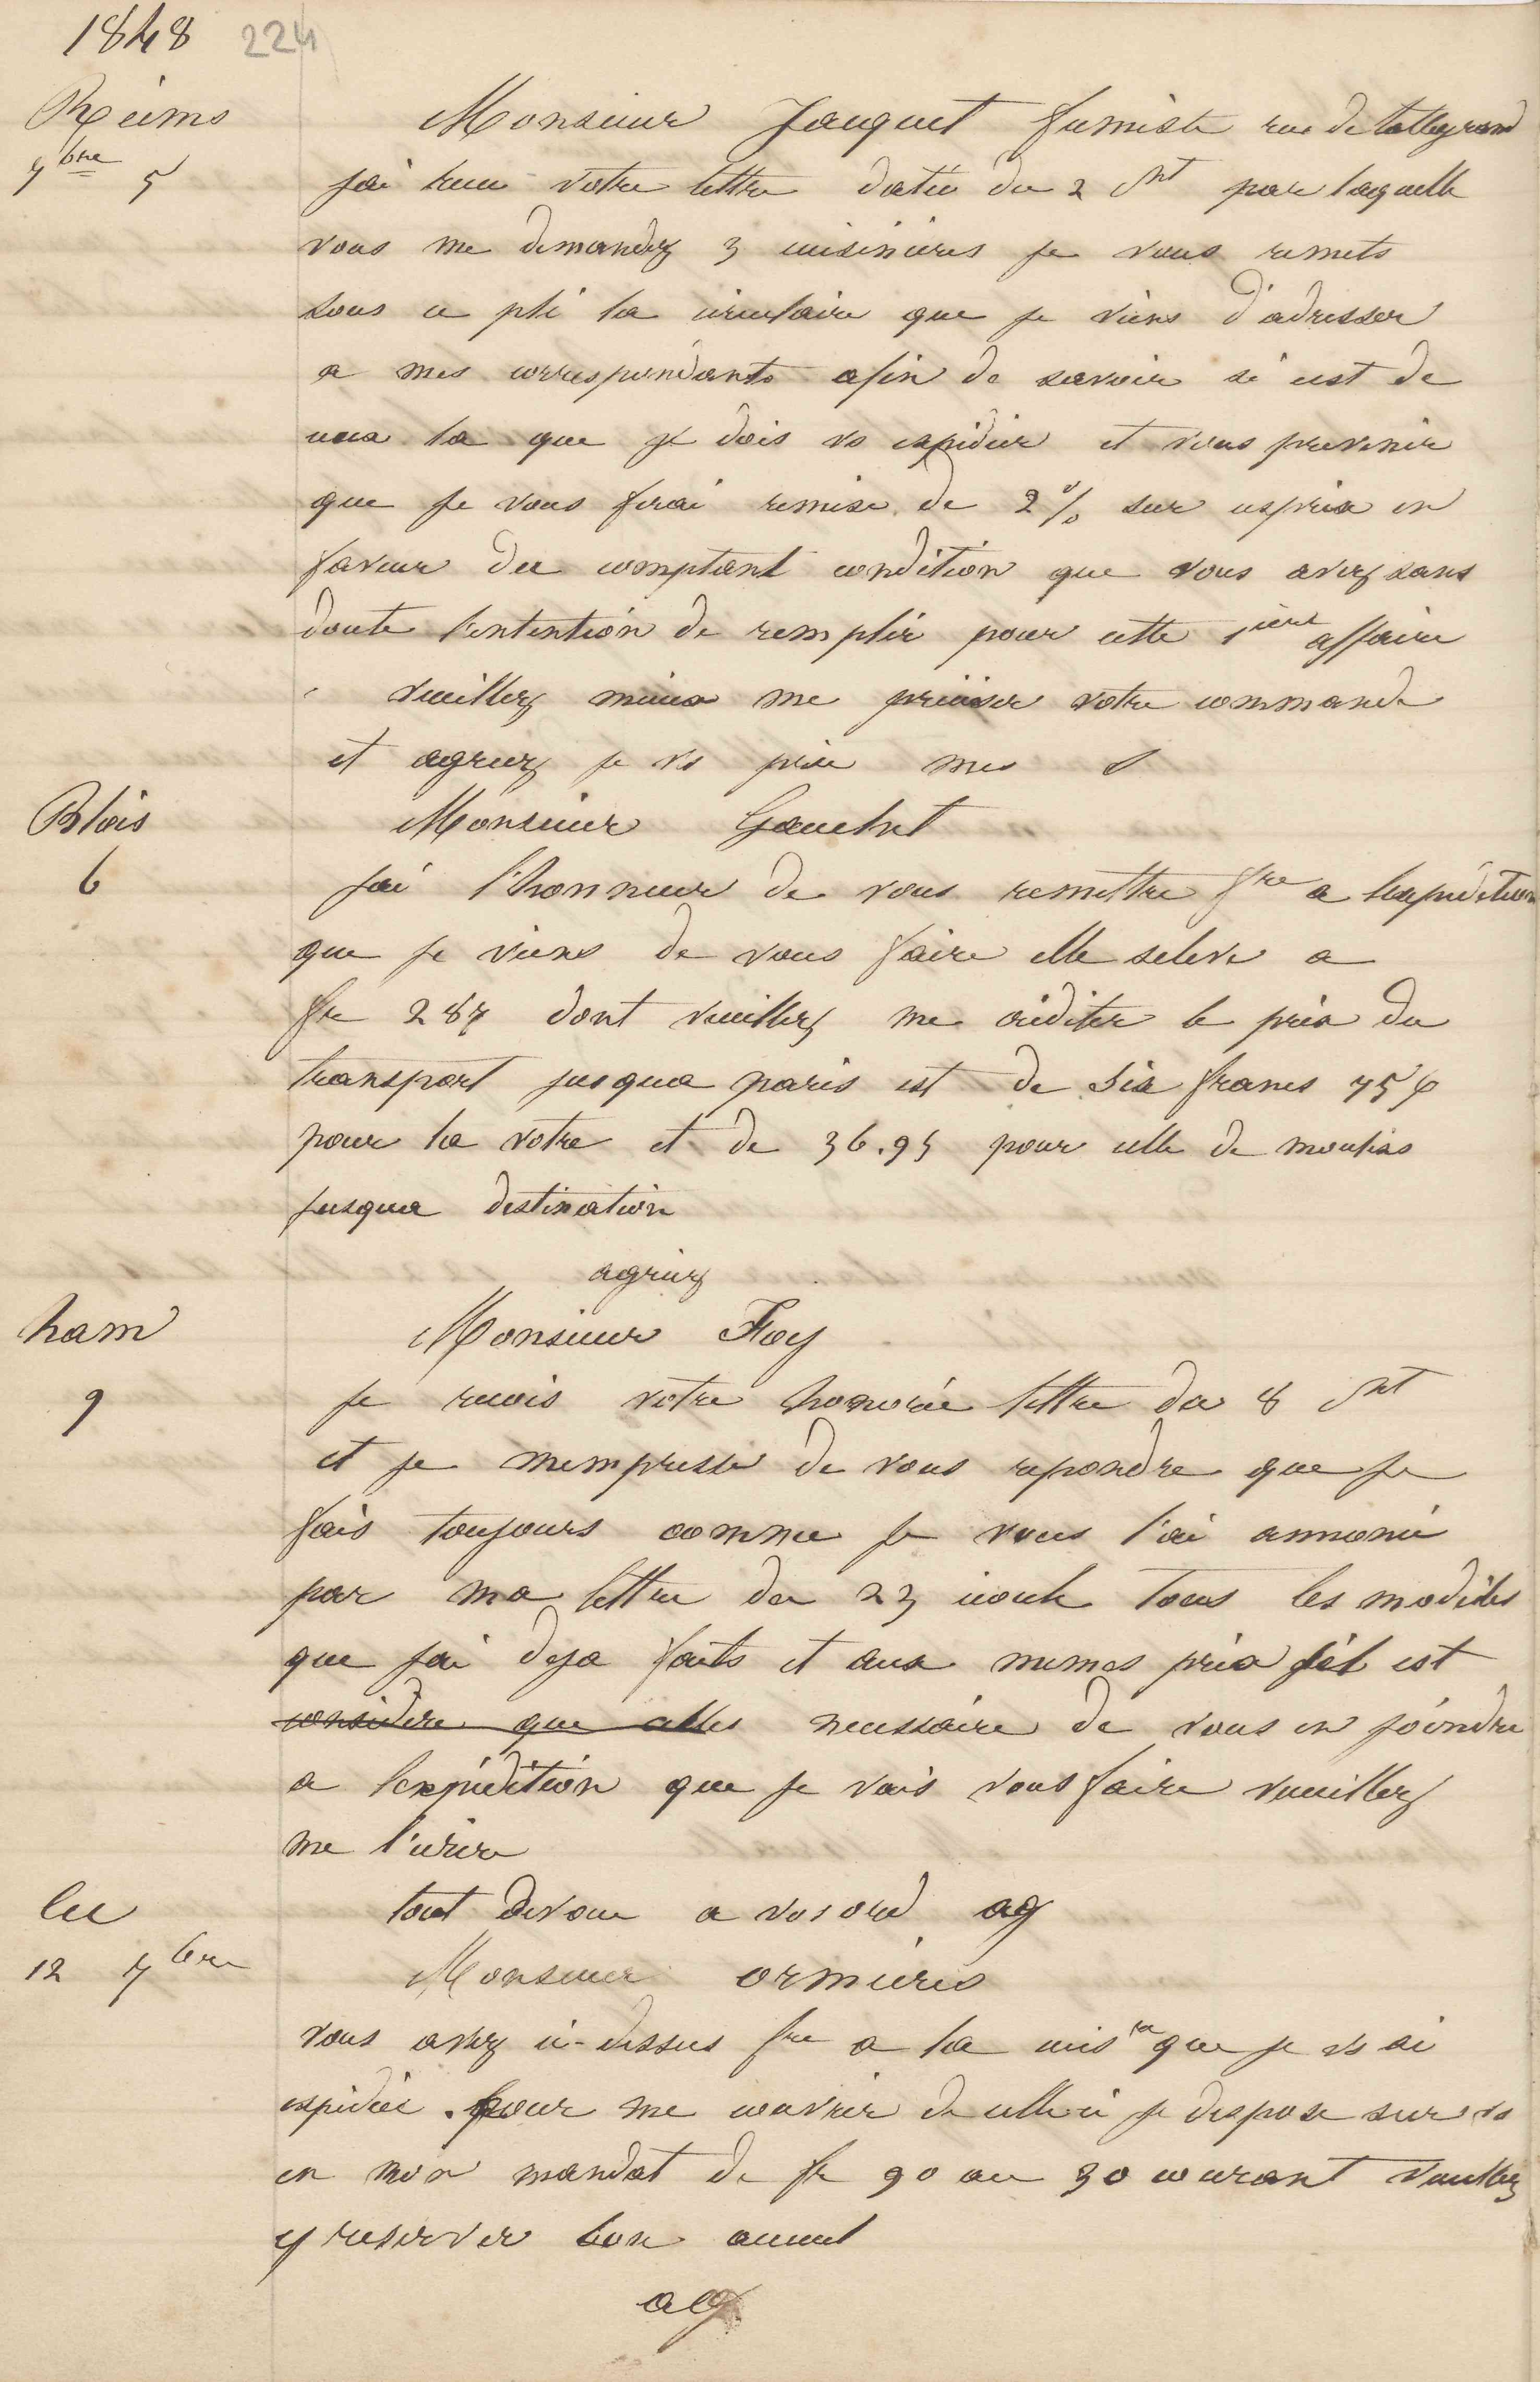 Jean-Baptiste André Godin à monsieur Gauchet, 6 septembre 1848